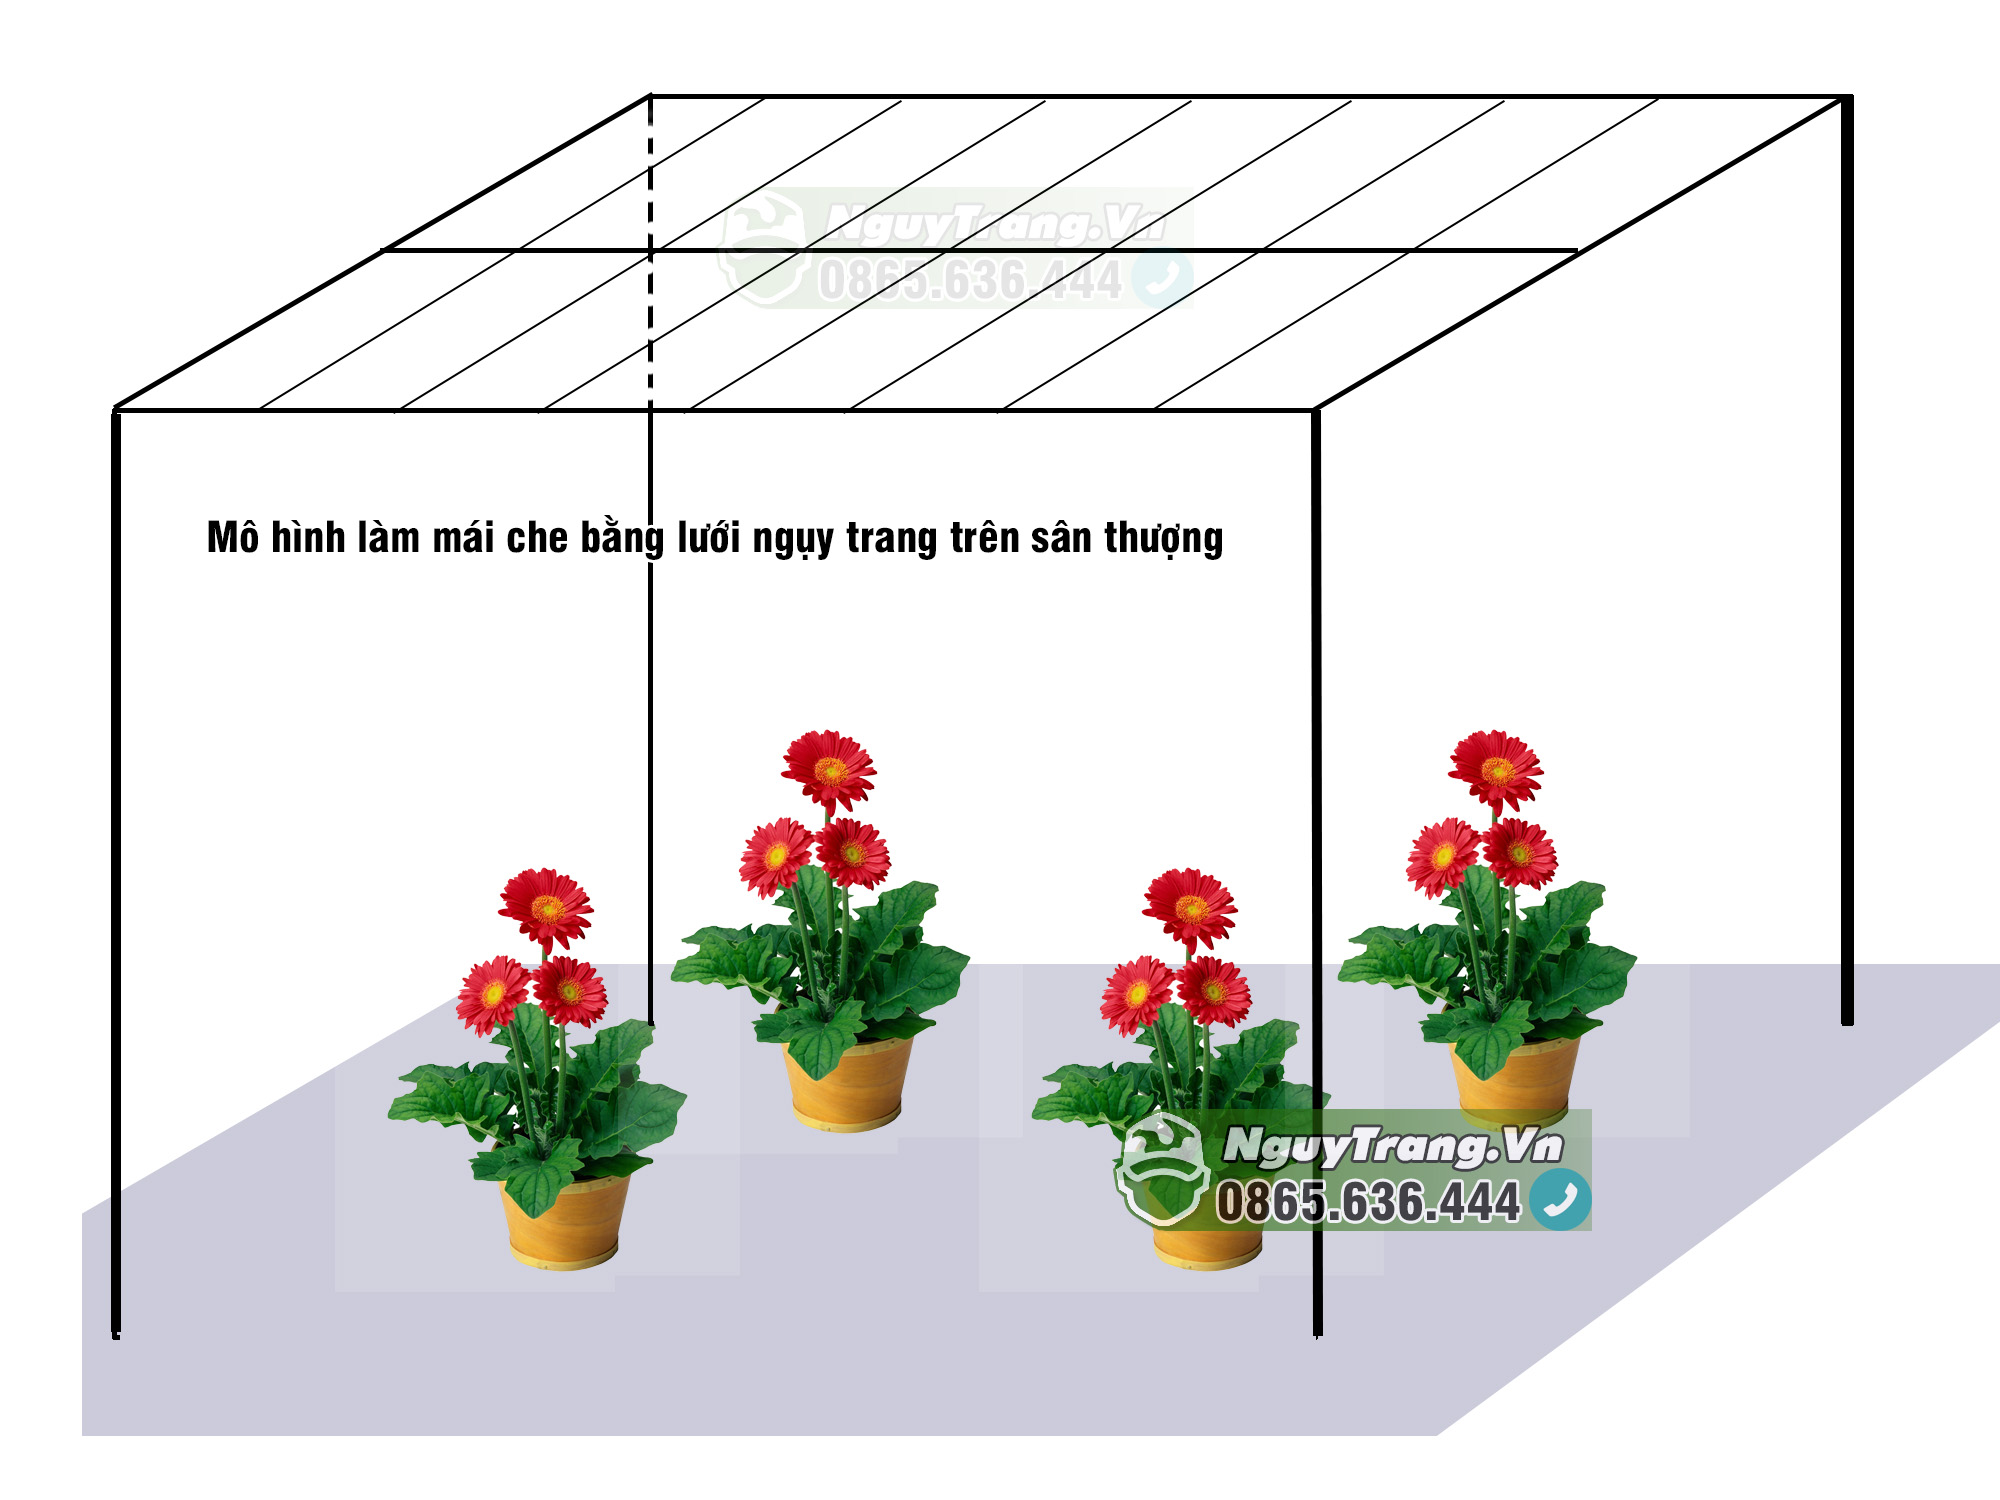 Lưới che nắng trồng cây sân thượng là giải pháp đơn giản và hiệu quả để bảo vệ cây trồng và tận dụng tối đa diện tích sân thượng. Hãy khám phá ngay bức ảnh lưới che nắng trồng cây sân thượng đầy khơi gợi sáng tạo này.